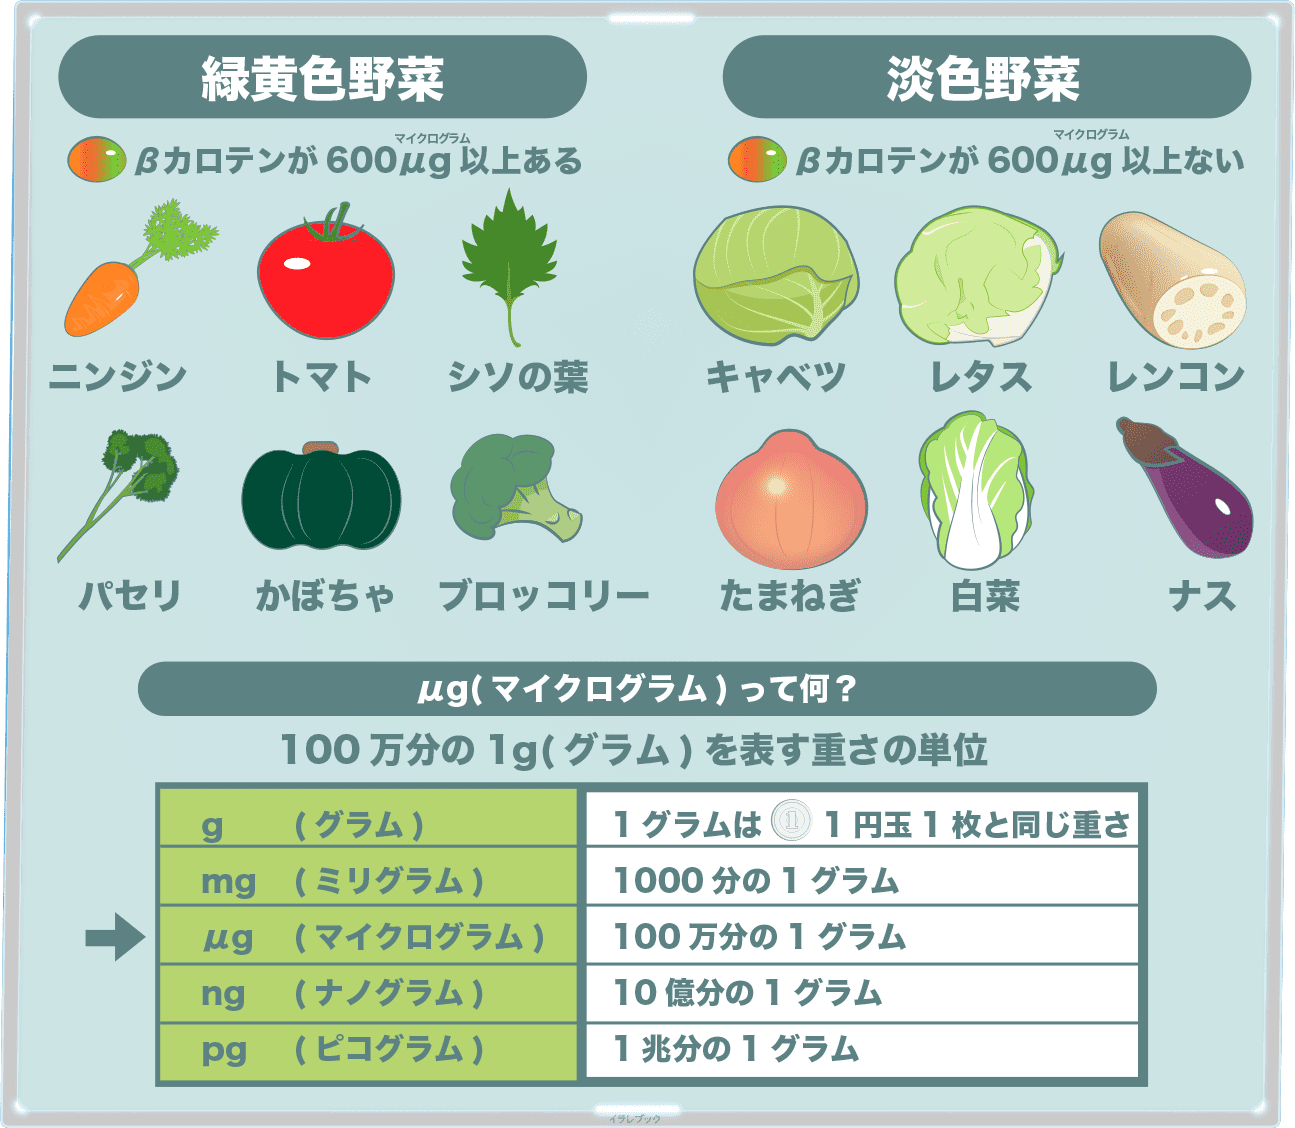 淡色野菜一覧 緑黄色野菜の基準とは 芋 キノコ 豆も Vegetable